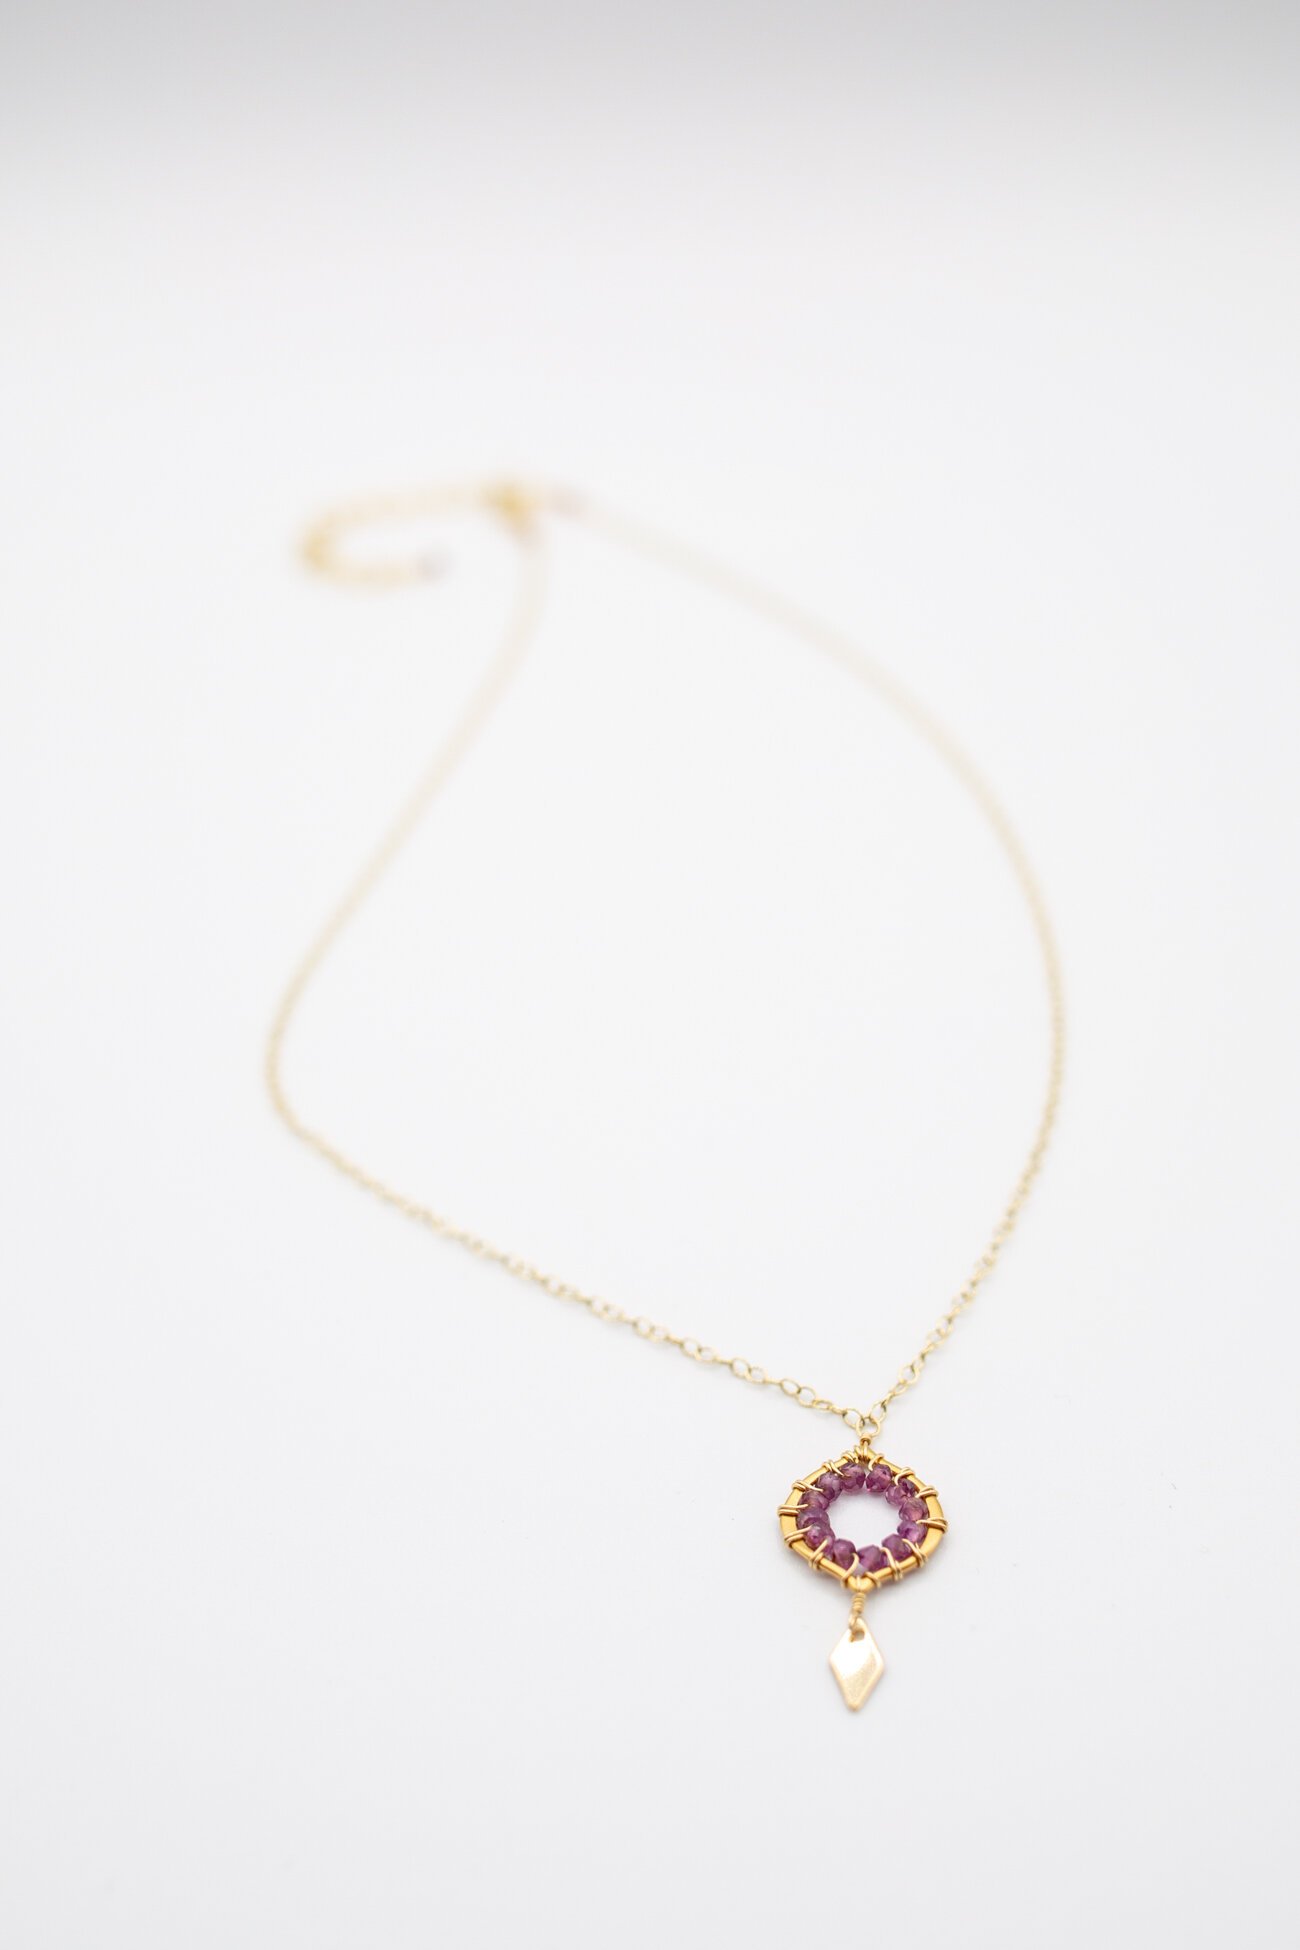 Susan Rifkin Jewelry Design by Avi Loren Fox LLC BLOG-1.jpg